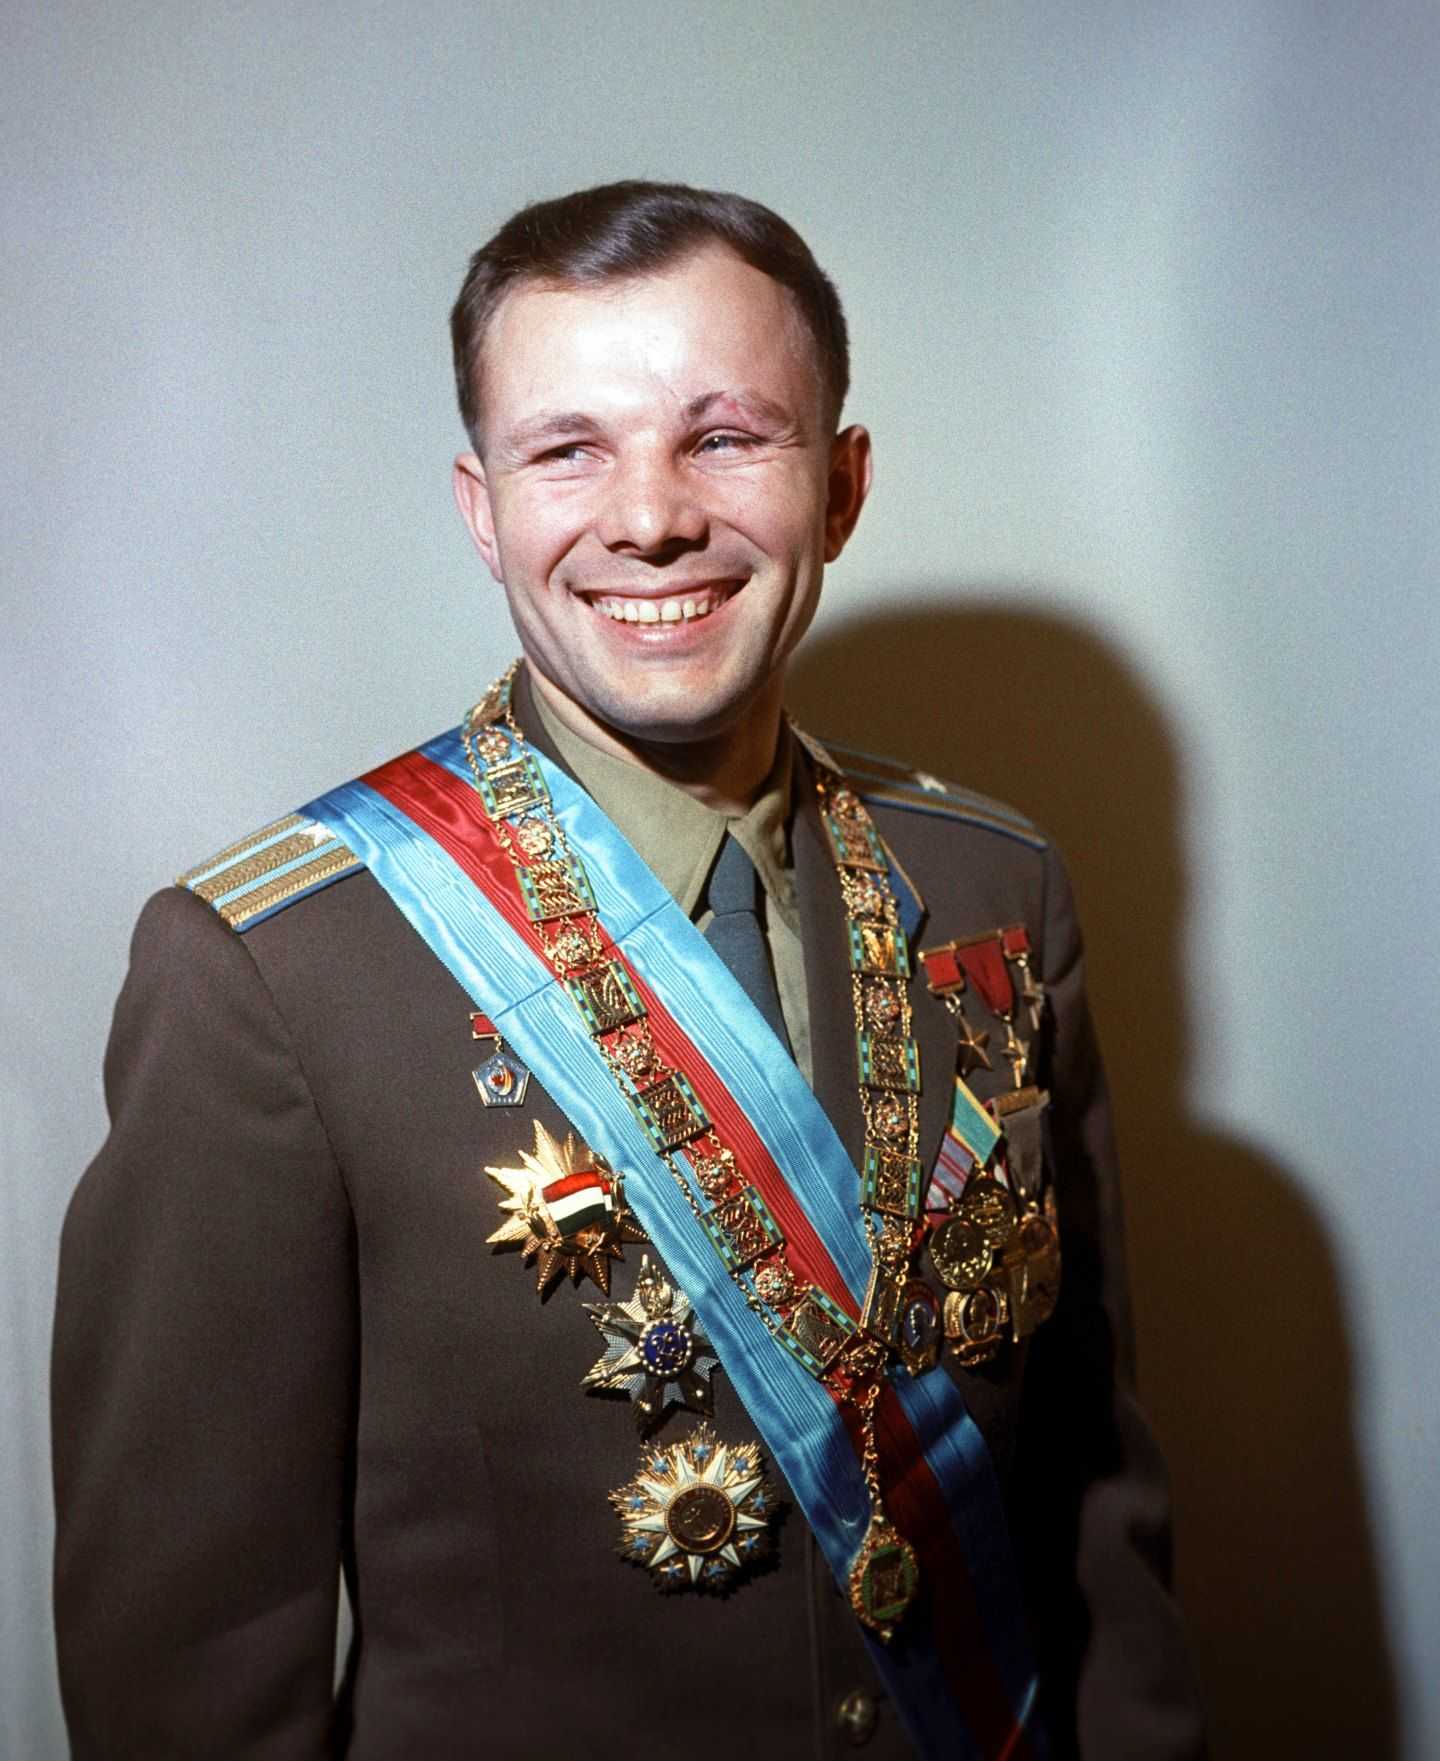 Юрий Гагарин – лётчик-космонавт СССР, Герой Советского Союза, кавалер высших знаков отличия ряда государств, почётный гражданин многих российских и